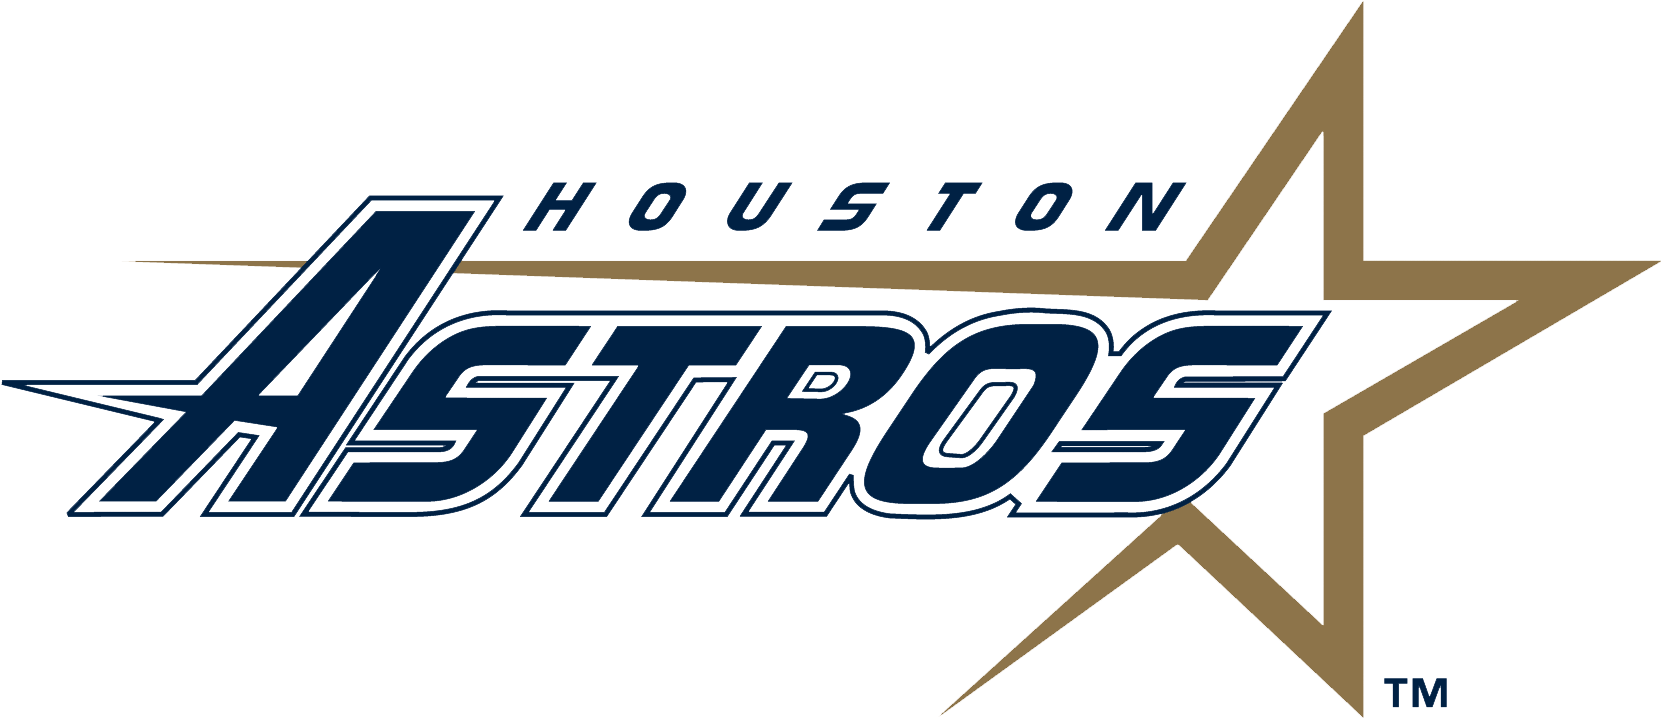 Houston Astros logotipo Free PNG Image